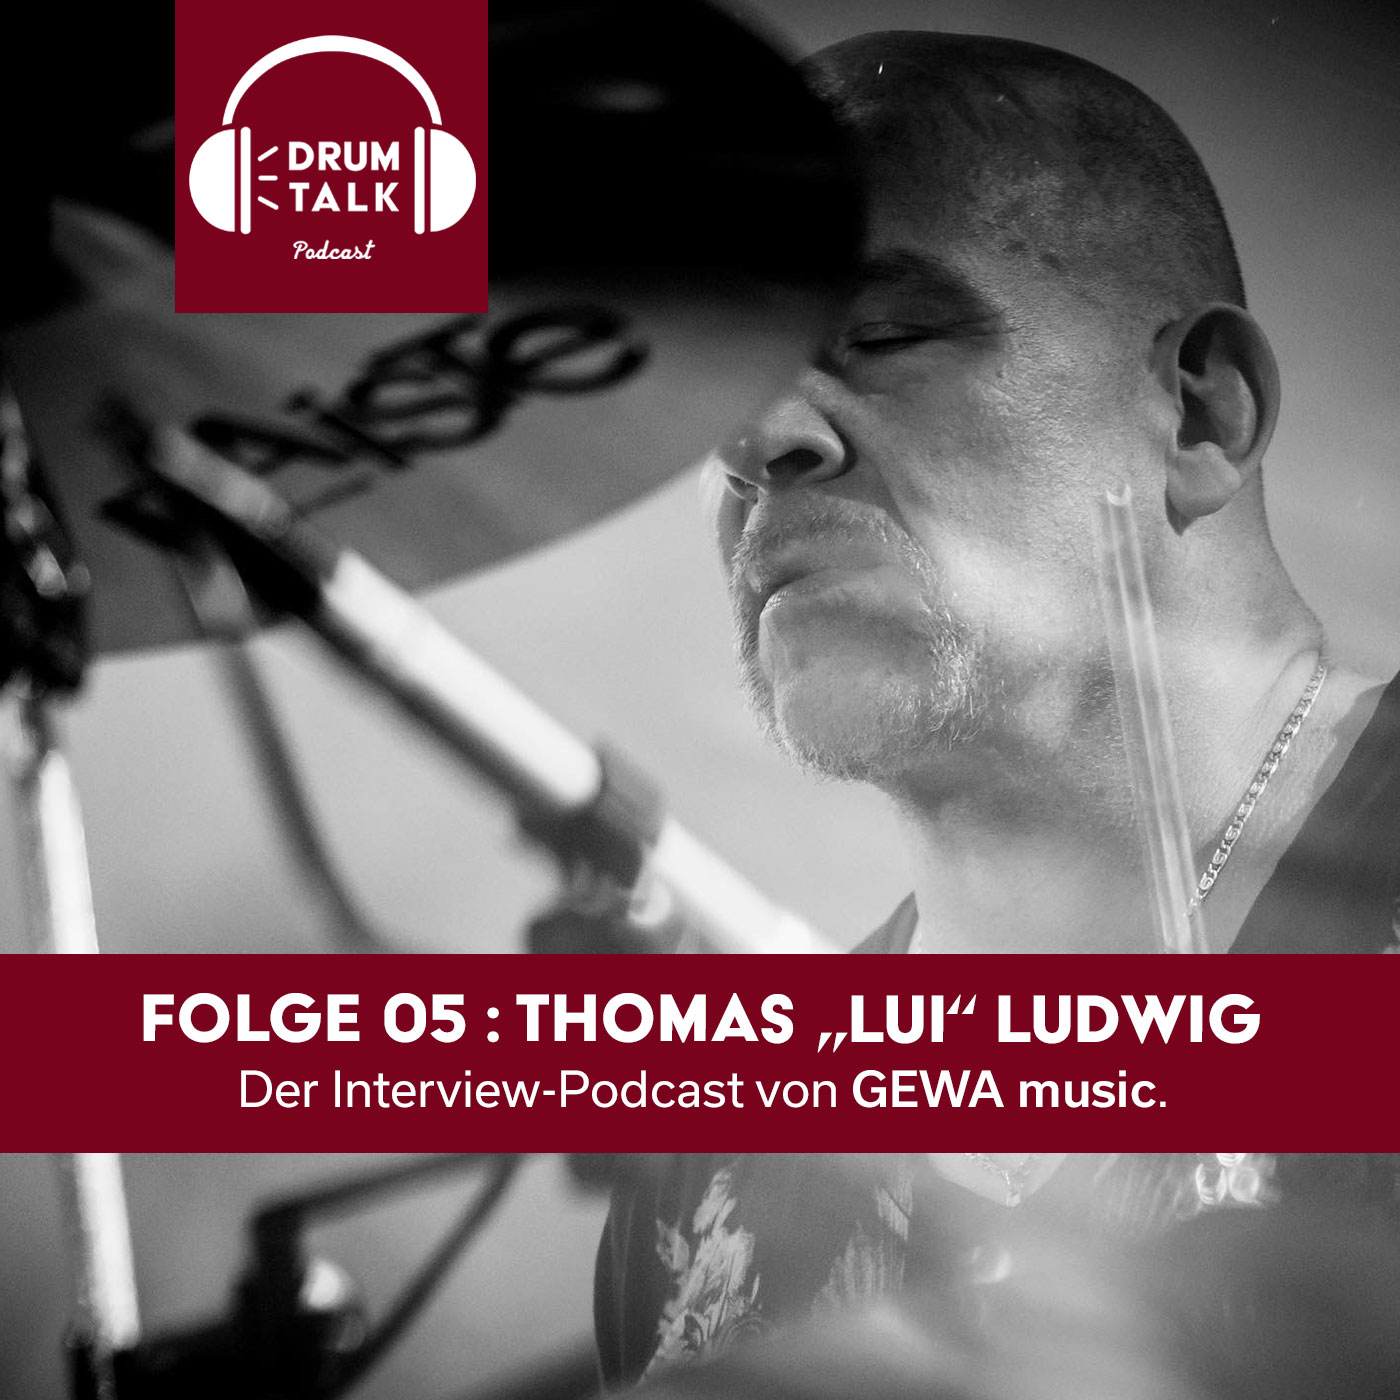 DT5 - Thomas "Luii" Ludwig: Wenn Du Ludwig bist, wer ist dann dieser DeeWee?